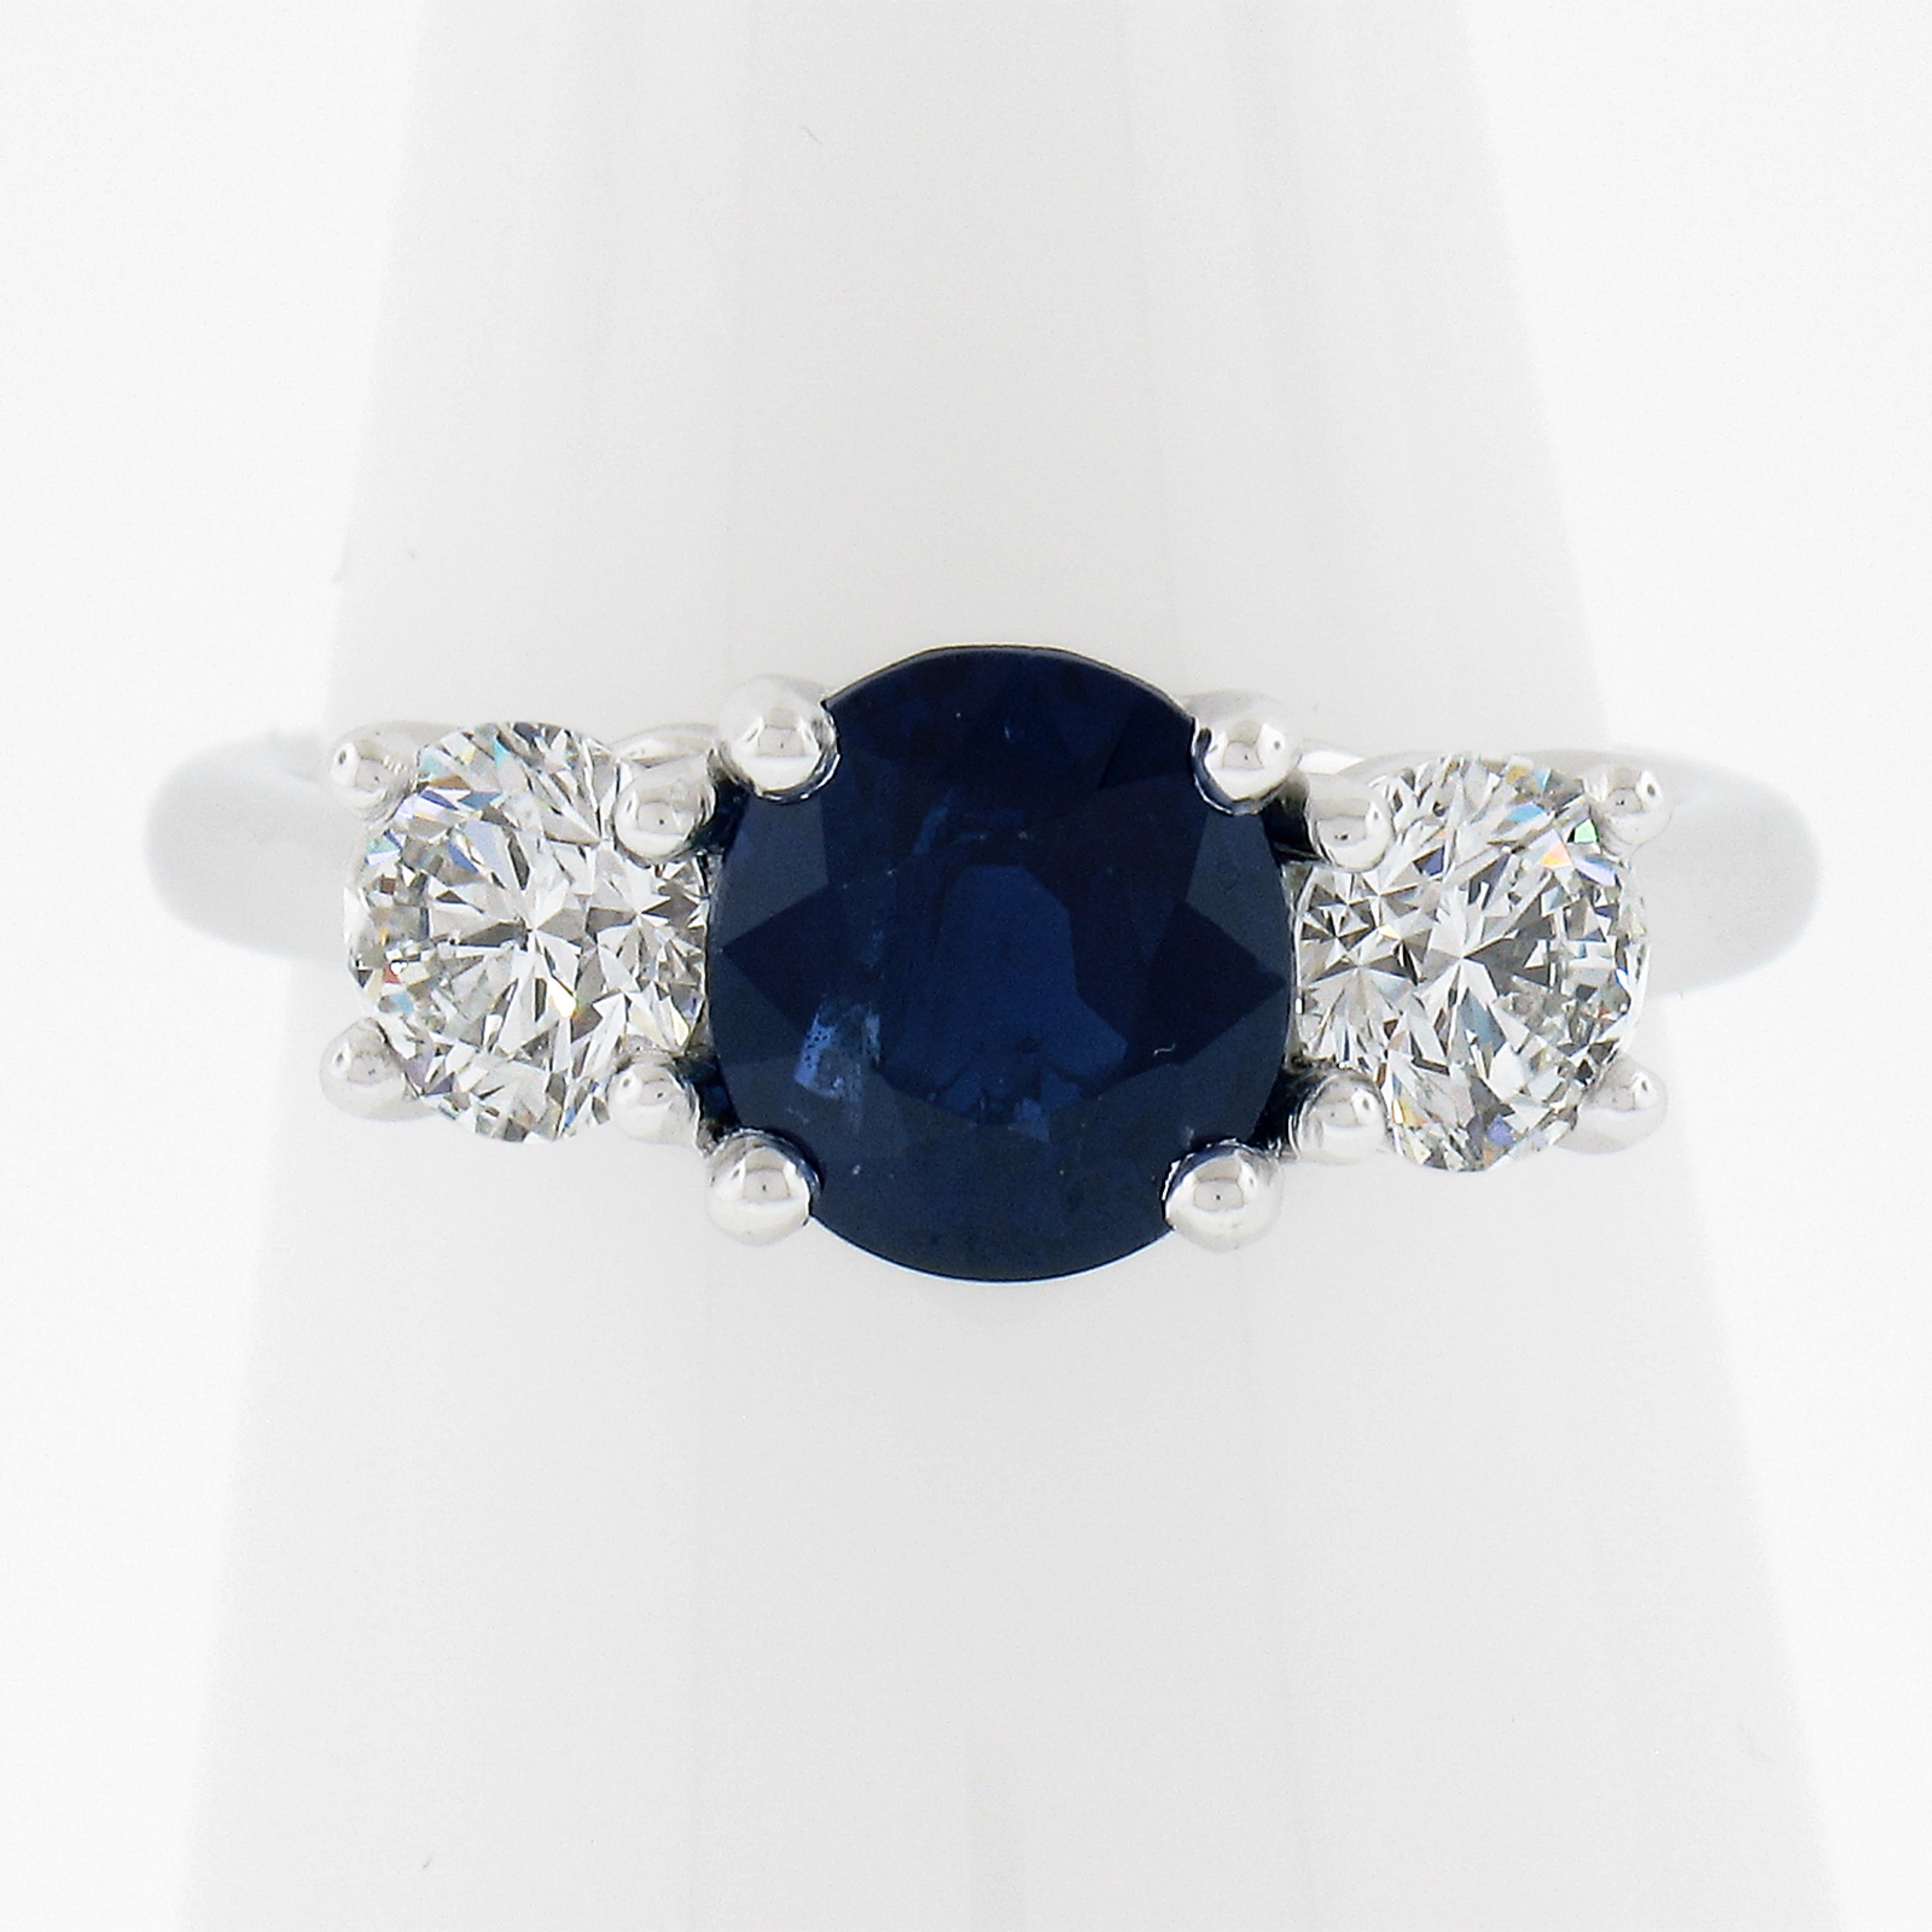 --Pierre(s) :...
(1) Saphir naturel véritable - taille ovale brillante - serti - couleur bleu royal étonnante - Burma No Heat - 2.05ct (exact - certifié)
**Voir les détails de la certification ci-dessous** 
(2) Diamants naturels authentiques -